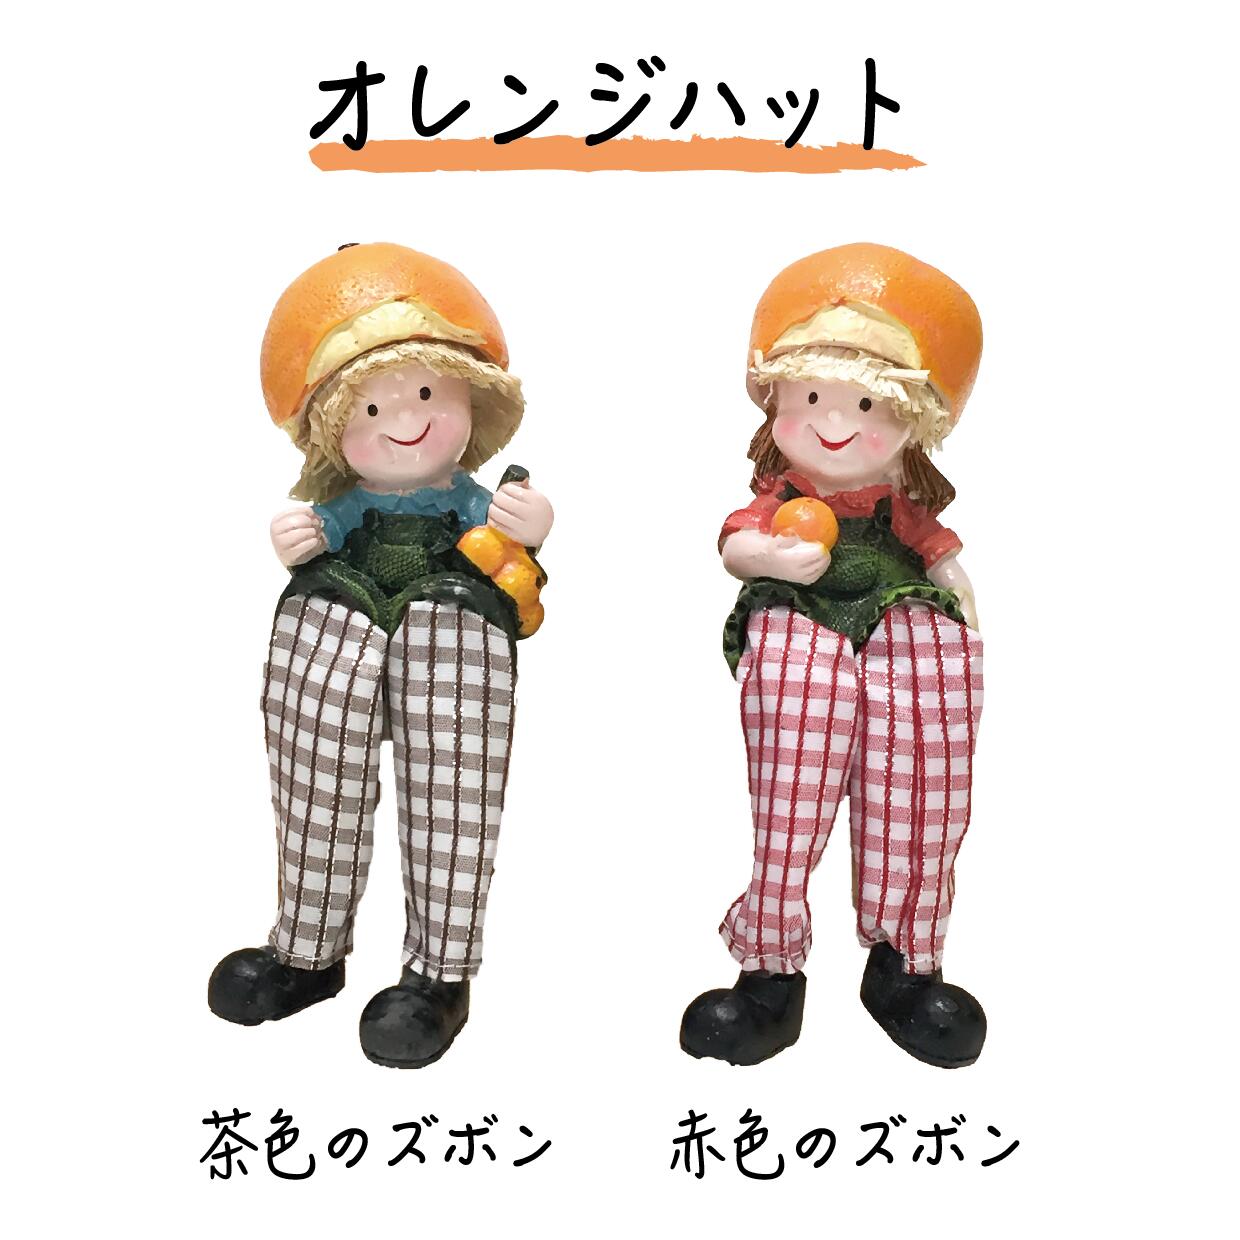 森のこびと 足ブラ 人形 ( キノコ / オレンジ / ブドウ / イチゴ ) こびと 置物 ディスプレイ かわいい 帽子 妖精 ガール ボーイ 男の子 女の子 ペア